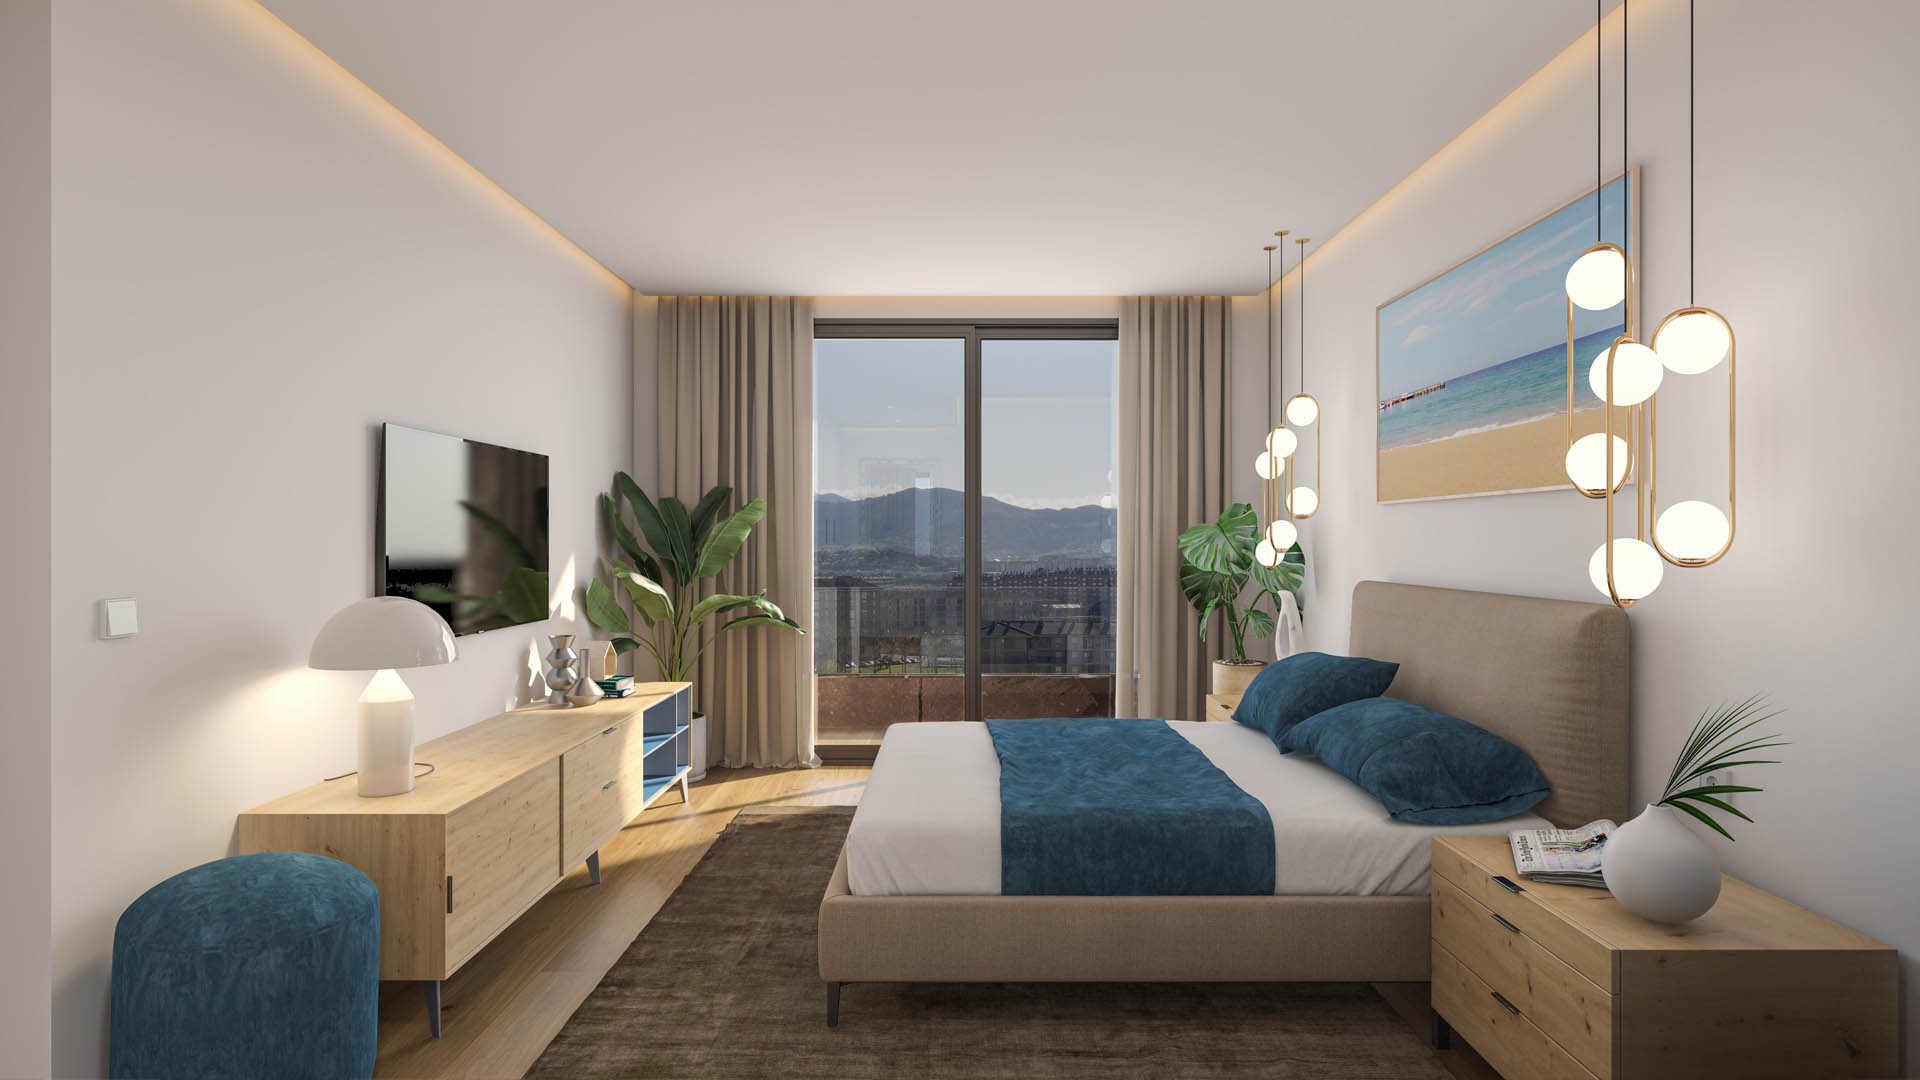 Infografía 3D - Vista interior del dormitorio de una vivienda para una promoción inmobiliaria